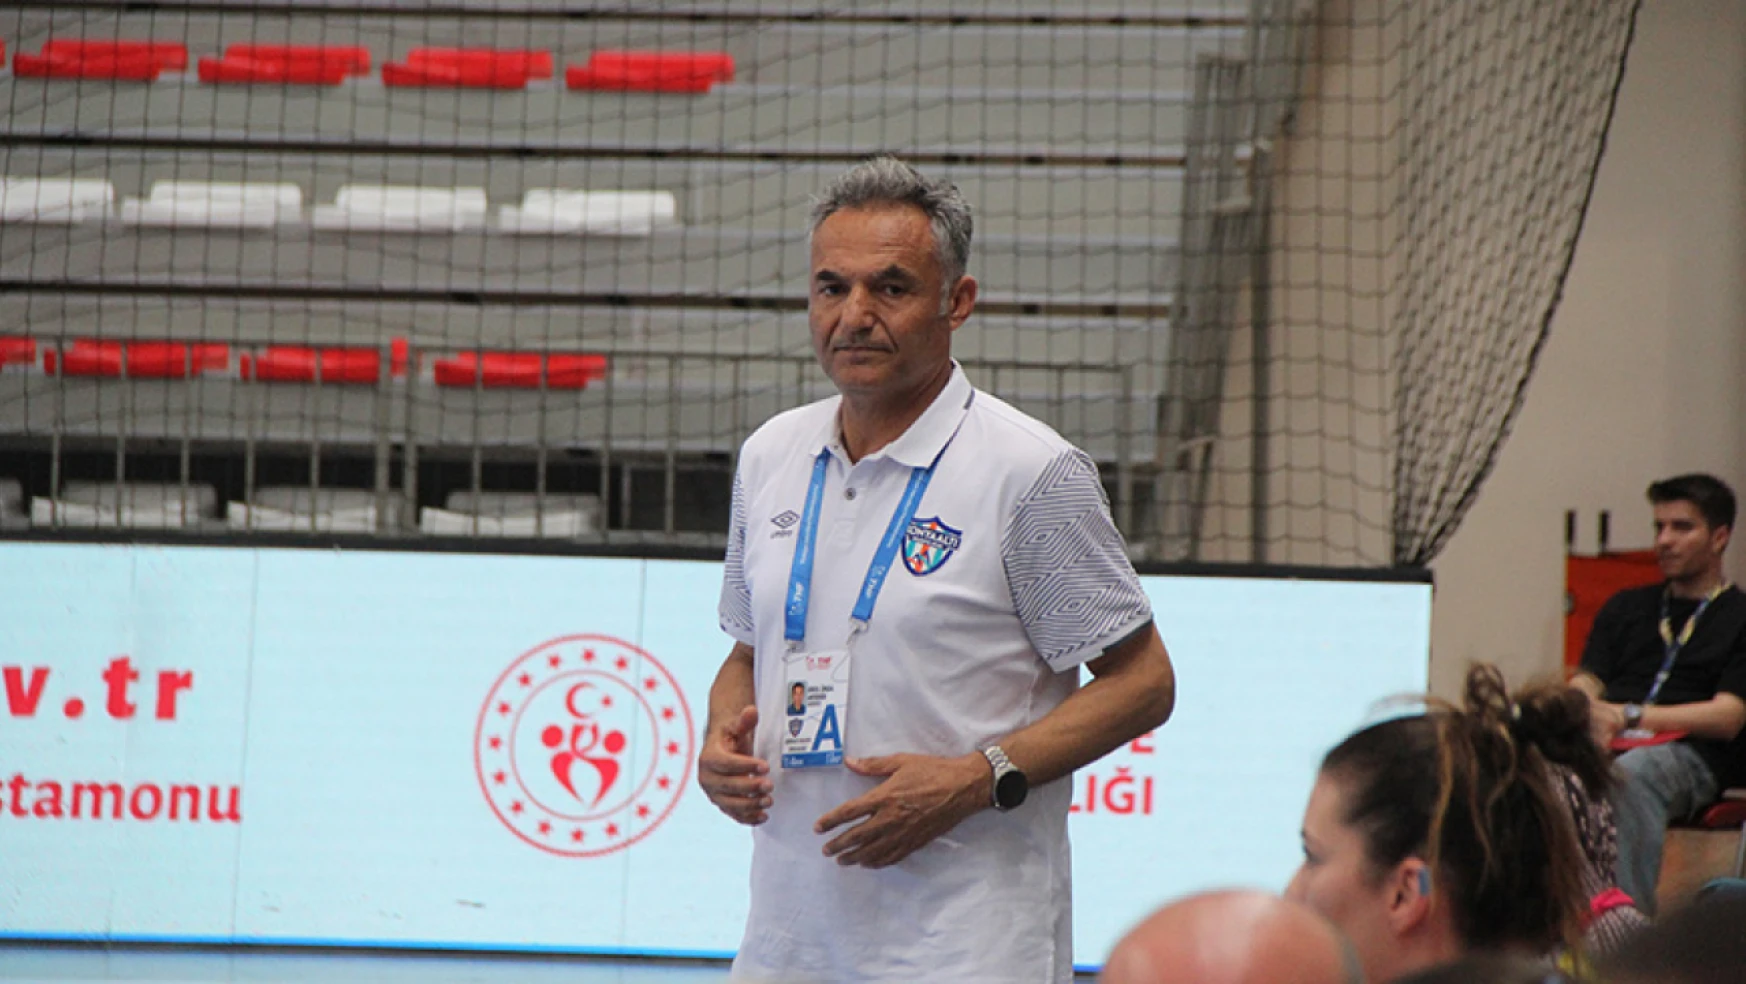 Konyaaltı Belediyespor Antrenörü Birol Ünsal'dan Kastamonu Belediyespor Galibiyeti Değerlendirmesi